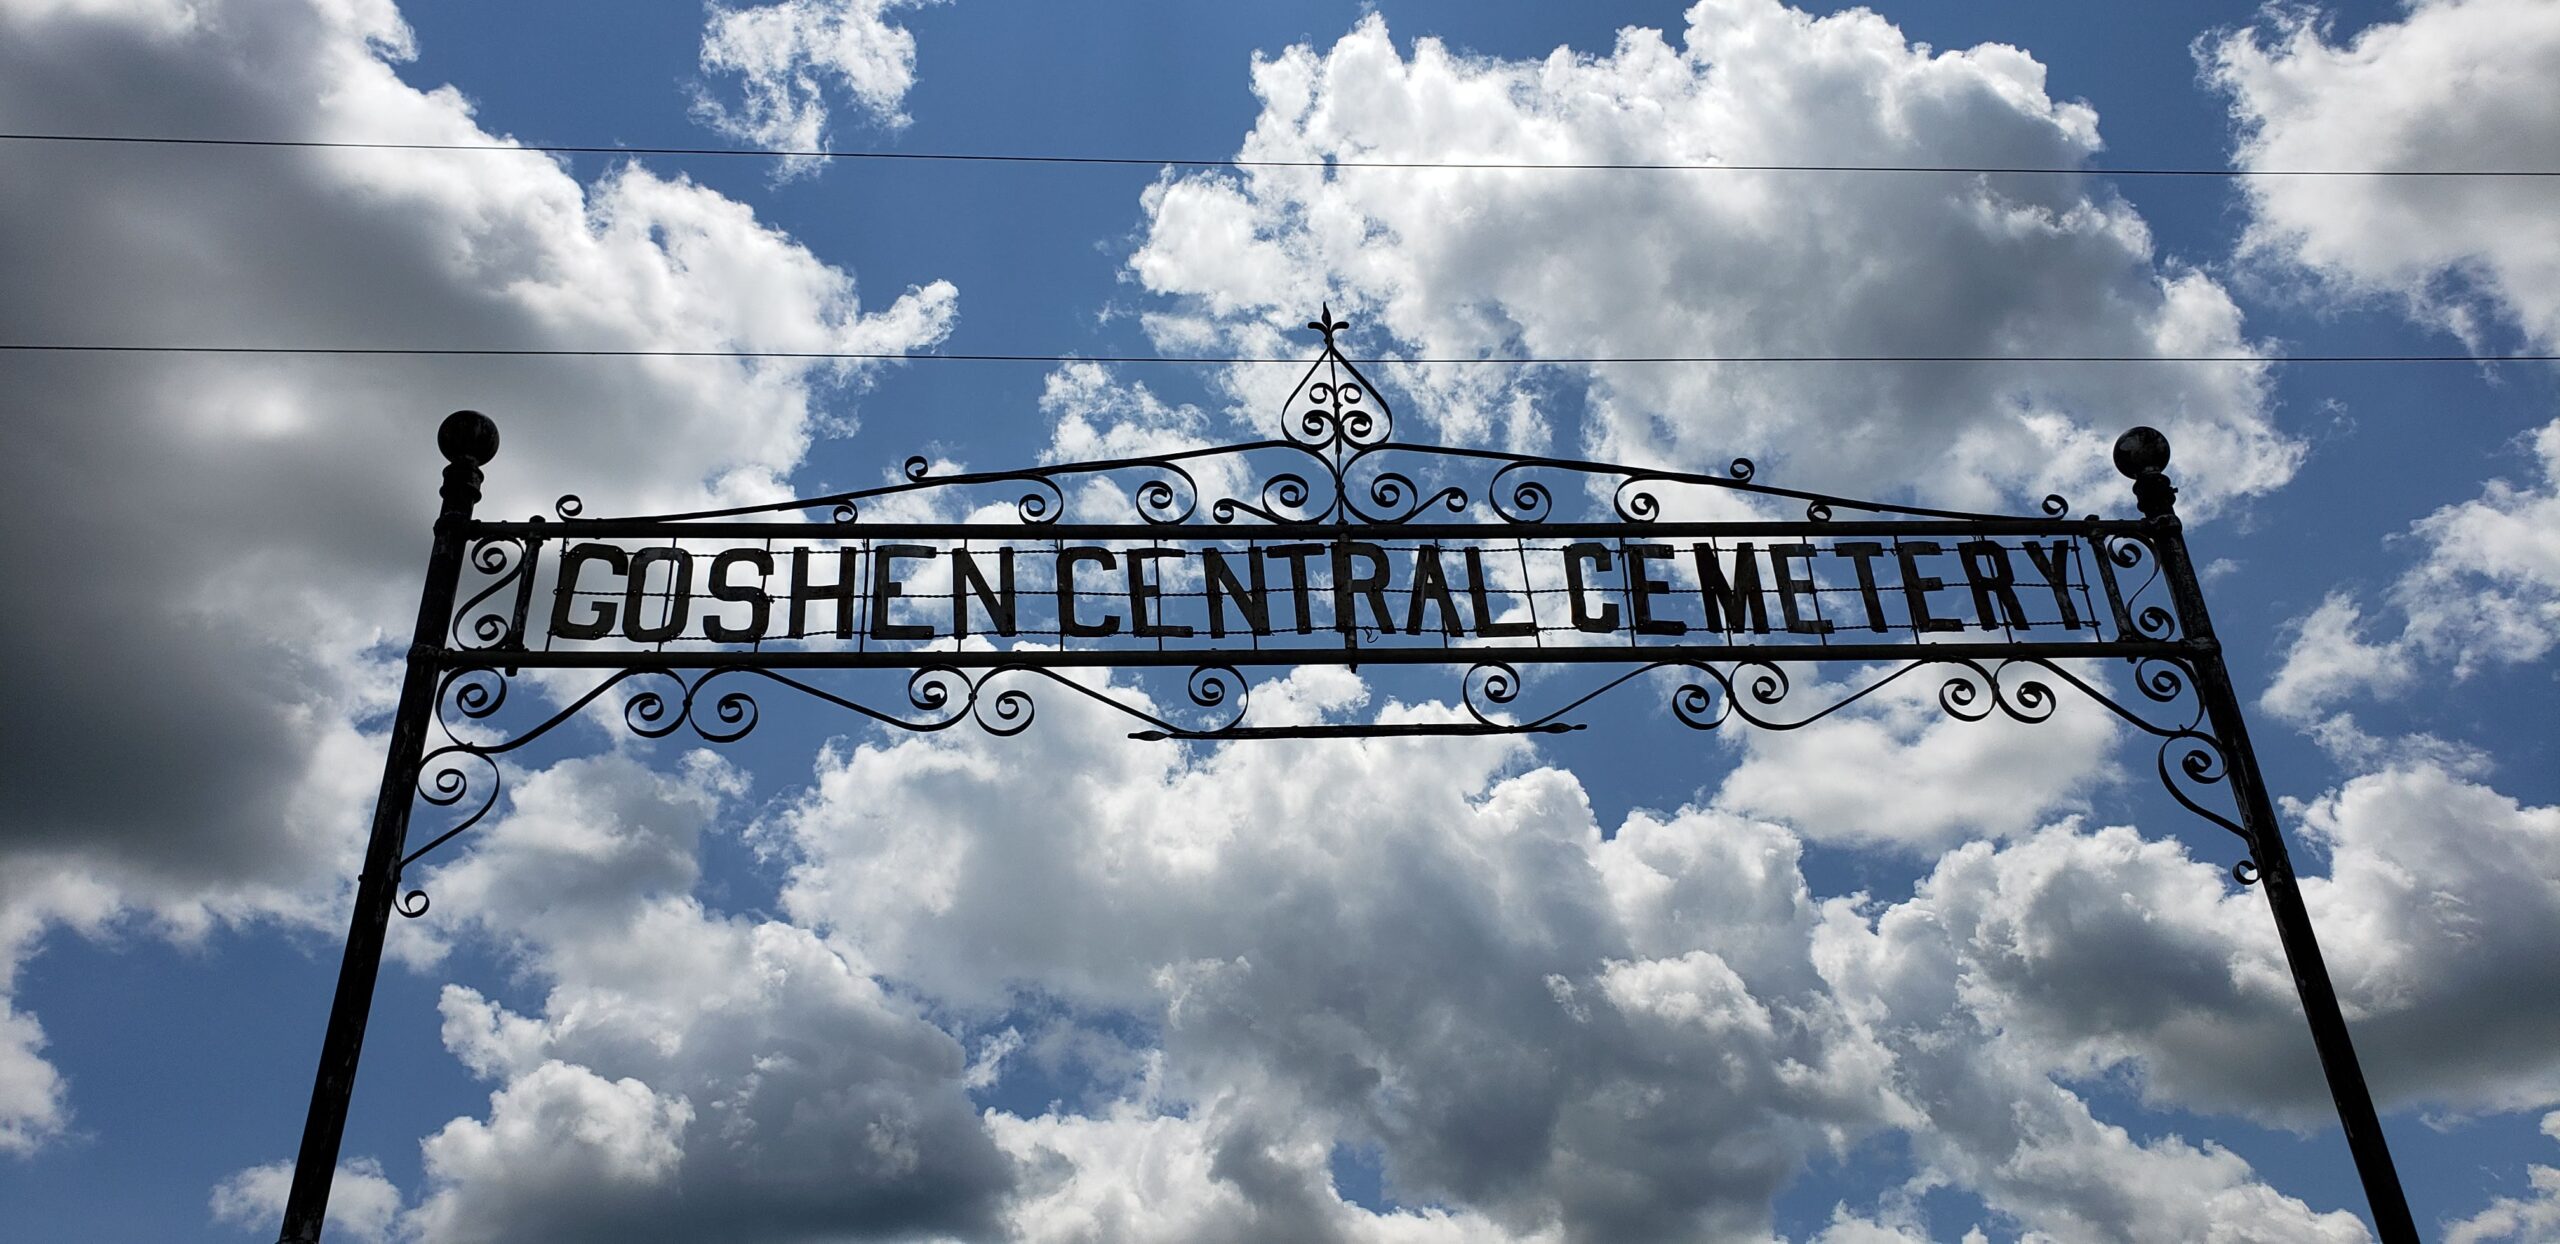 Entrance to Goshen Central Cemetery